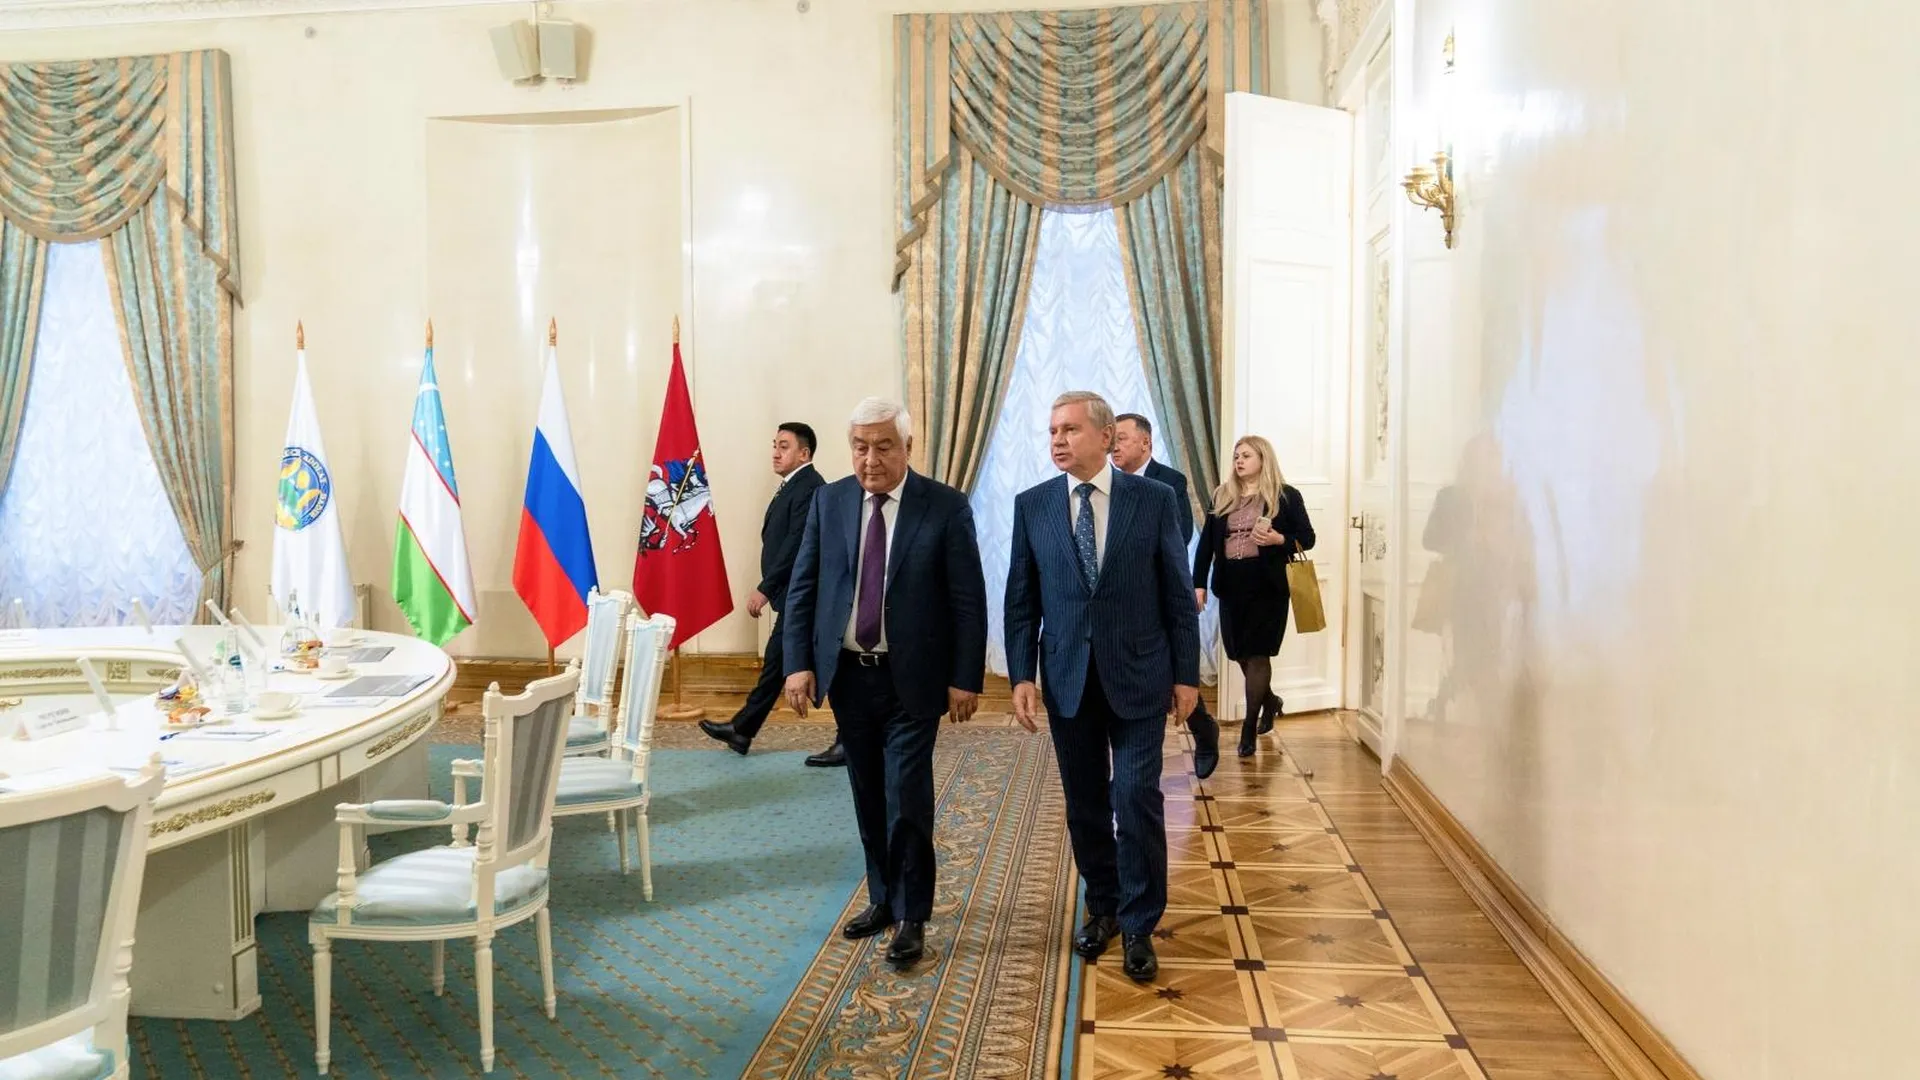 Бочкарев: Москва поделилась с Узбекистаном итогами работы Стройкомплекса